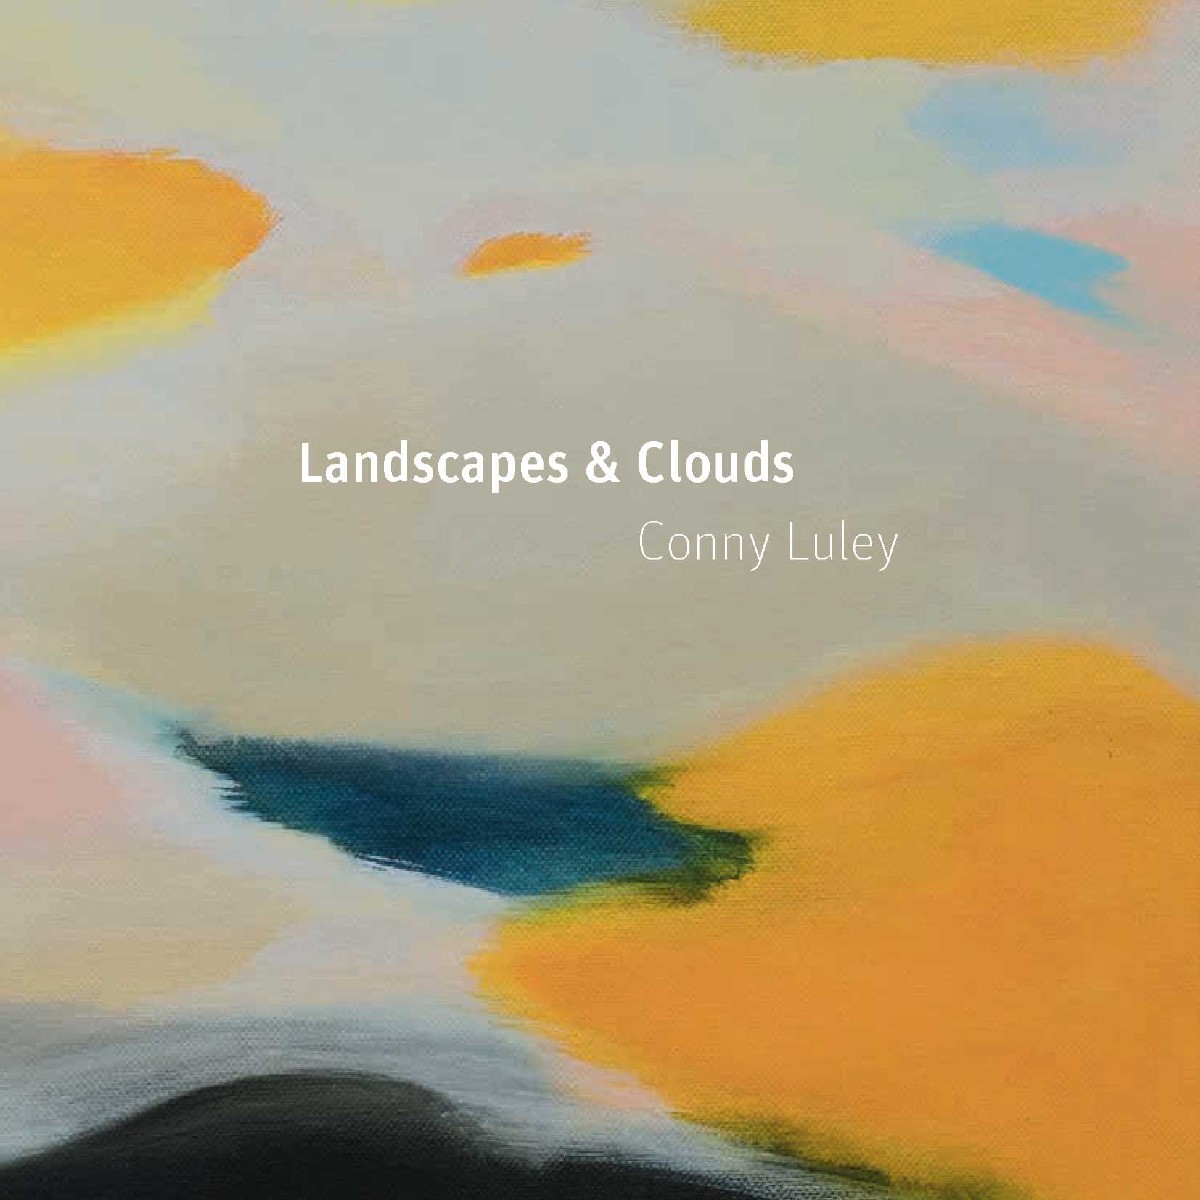 Katalog Conny Luley, Sandstein Verlag, 